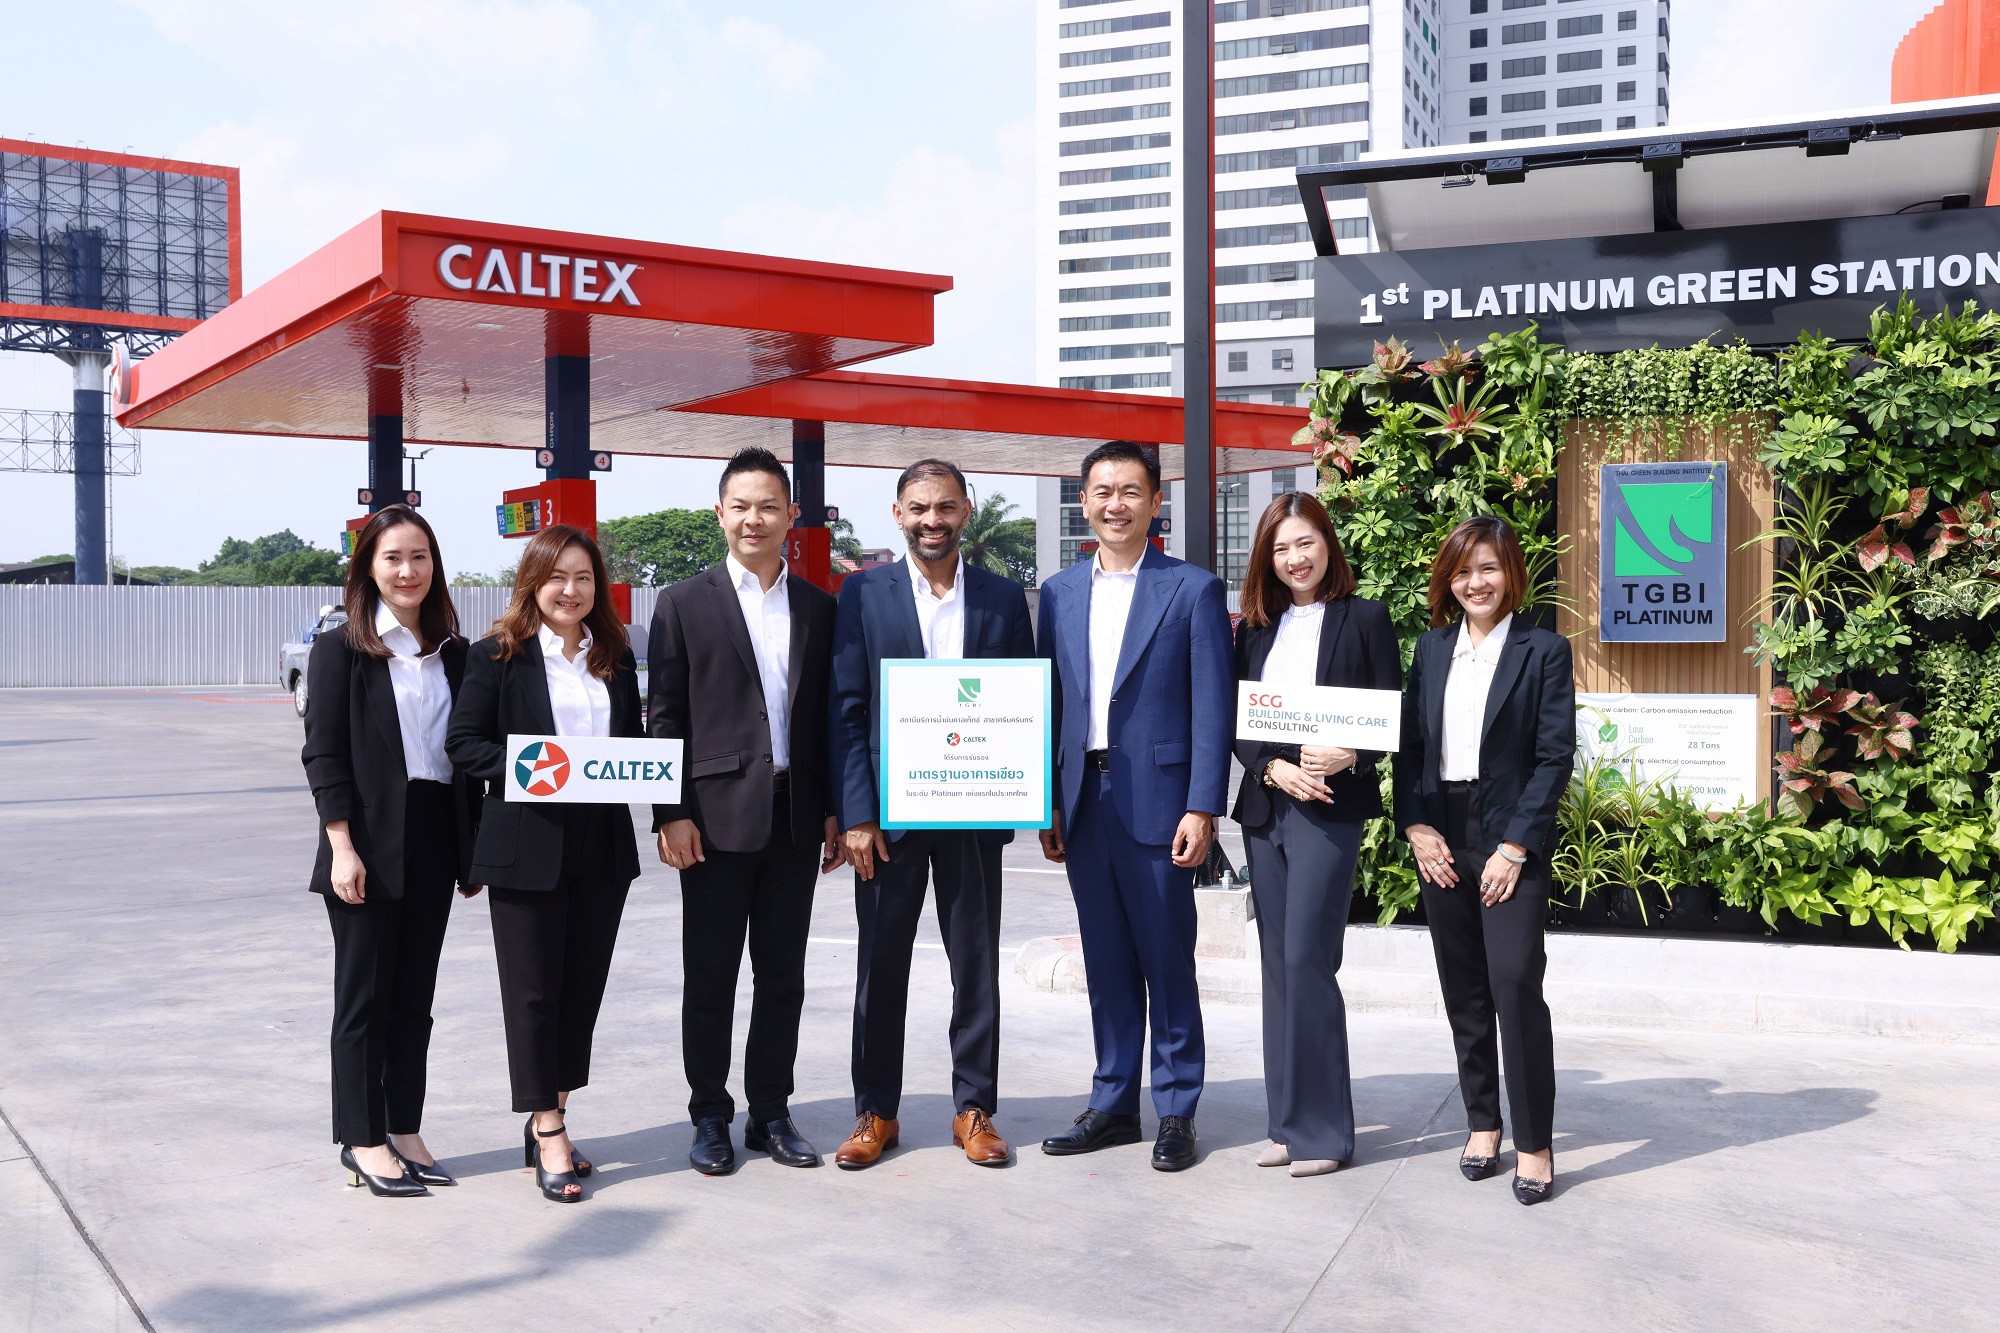 สถานีบริการน้ำมันคาลเท็กซ์ คว้ารางวัลอาคารเขียวระดับ Platinum  แห่งแรกในประเทศไทย